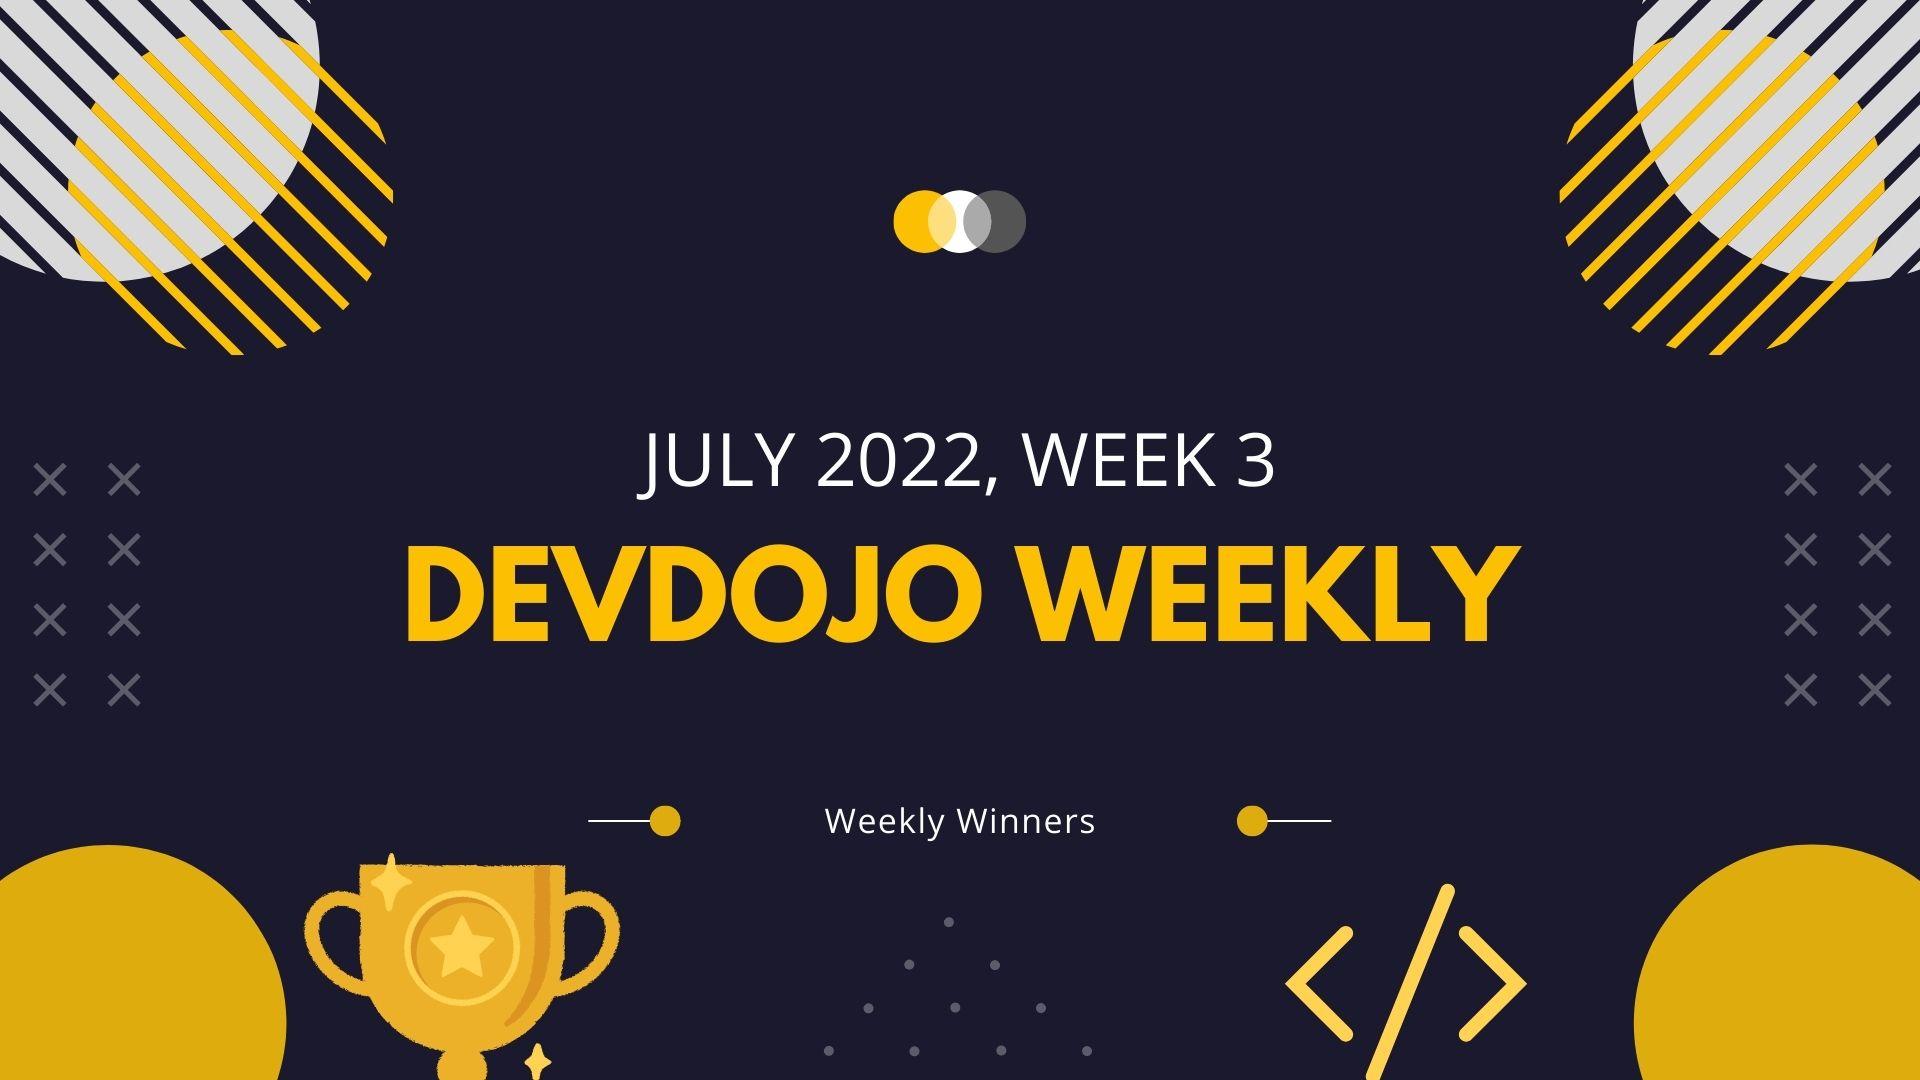 DevDojo Weekly - July 2022 - Week 3